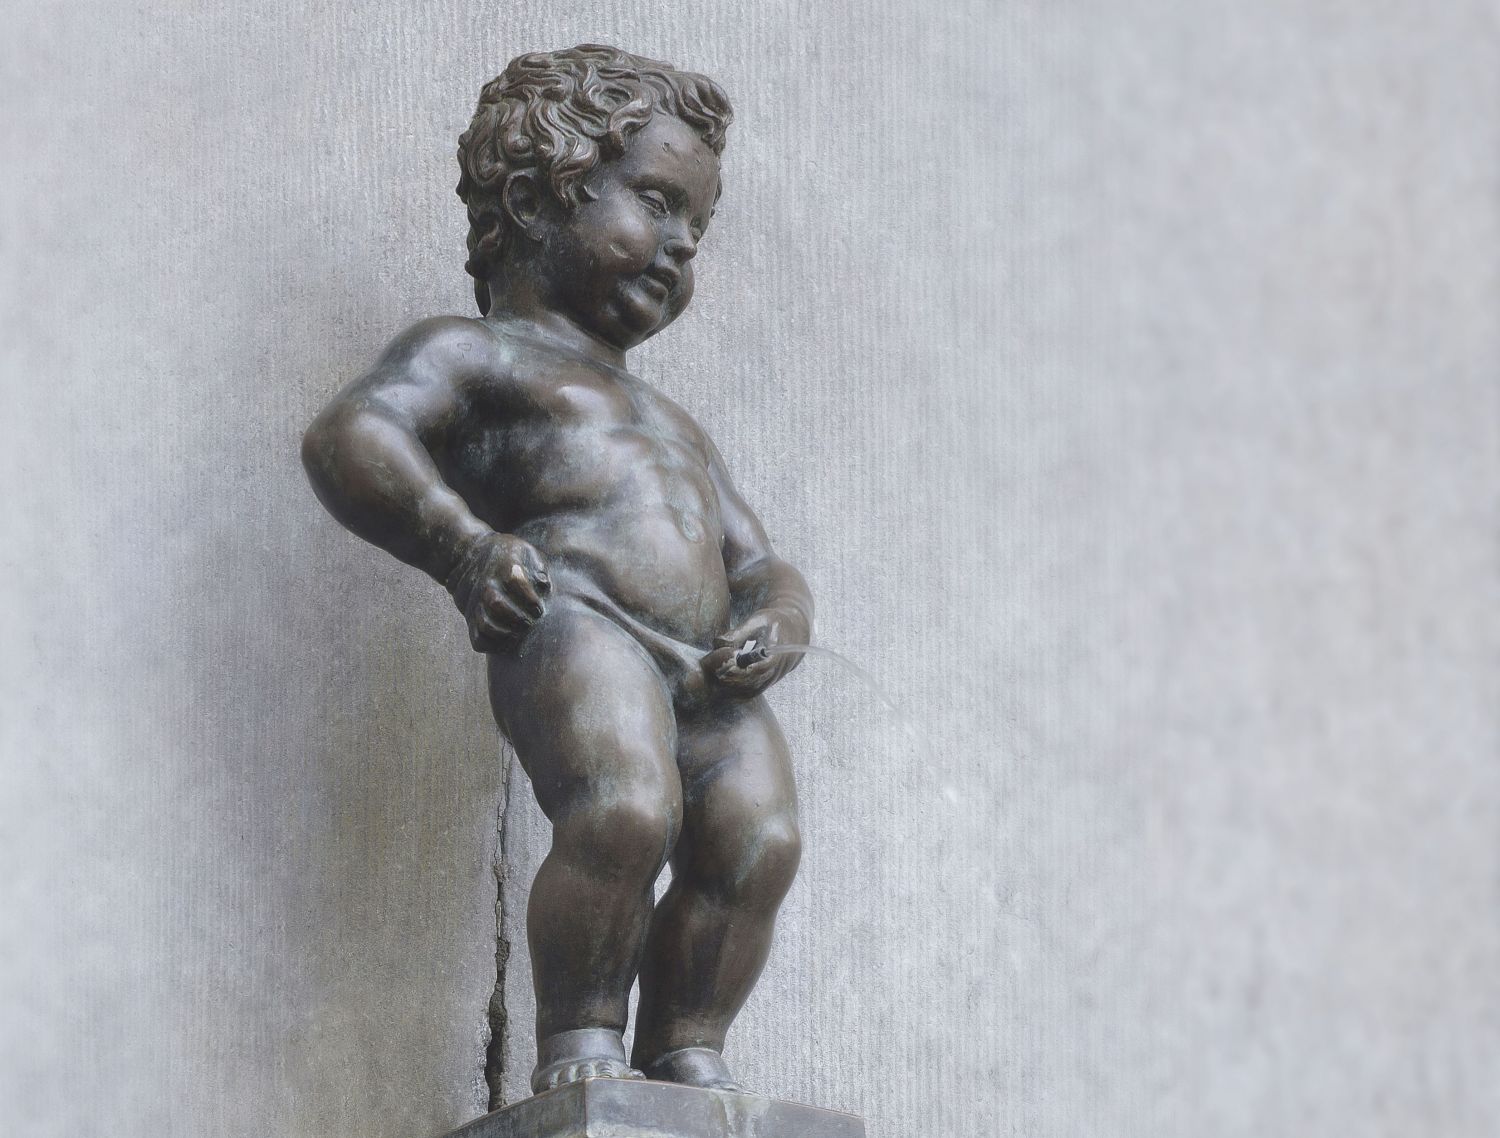  Statue eines kleinen Kindes beim Urinieren